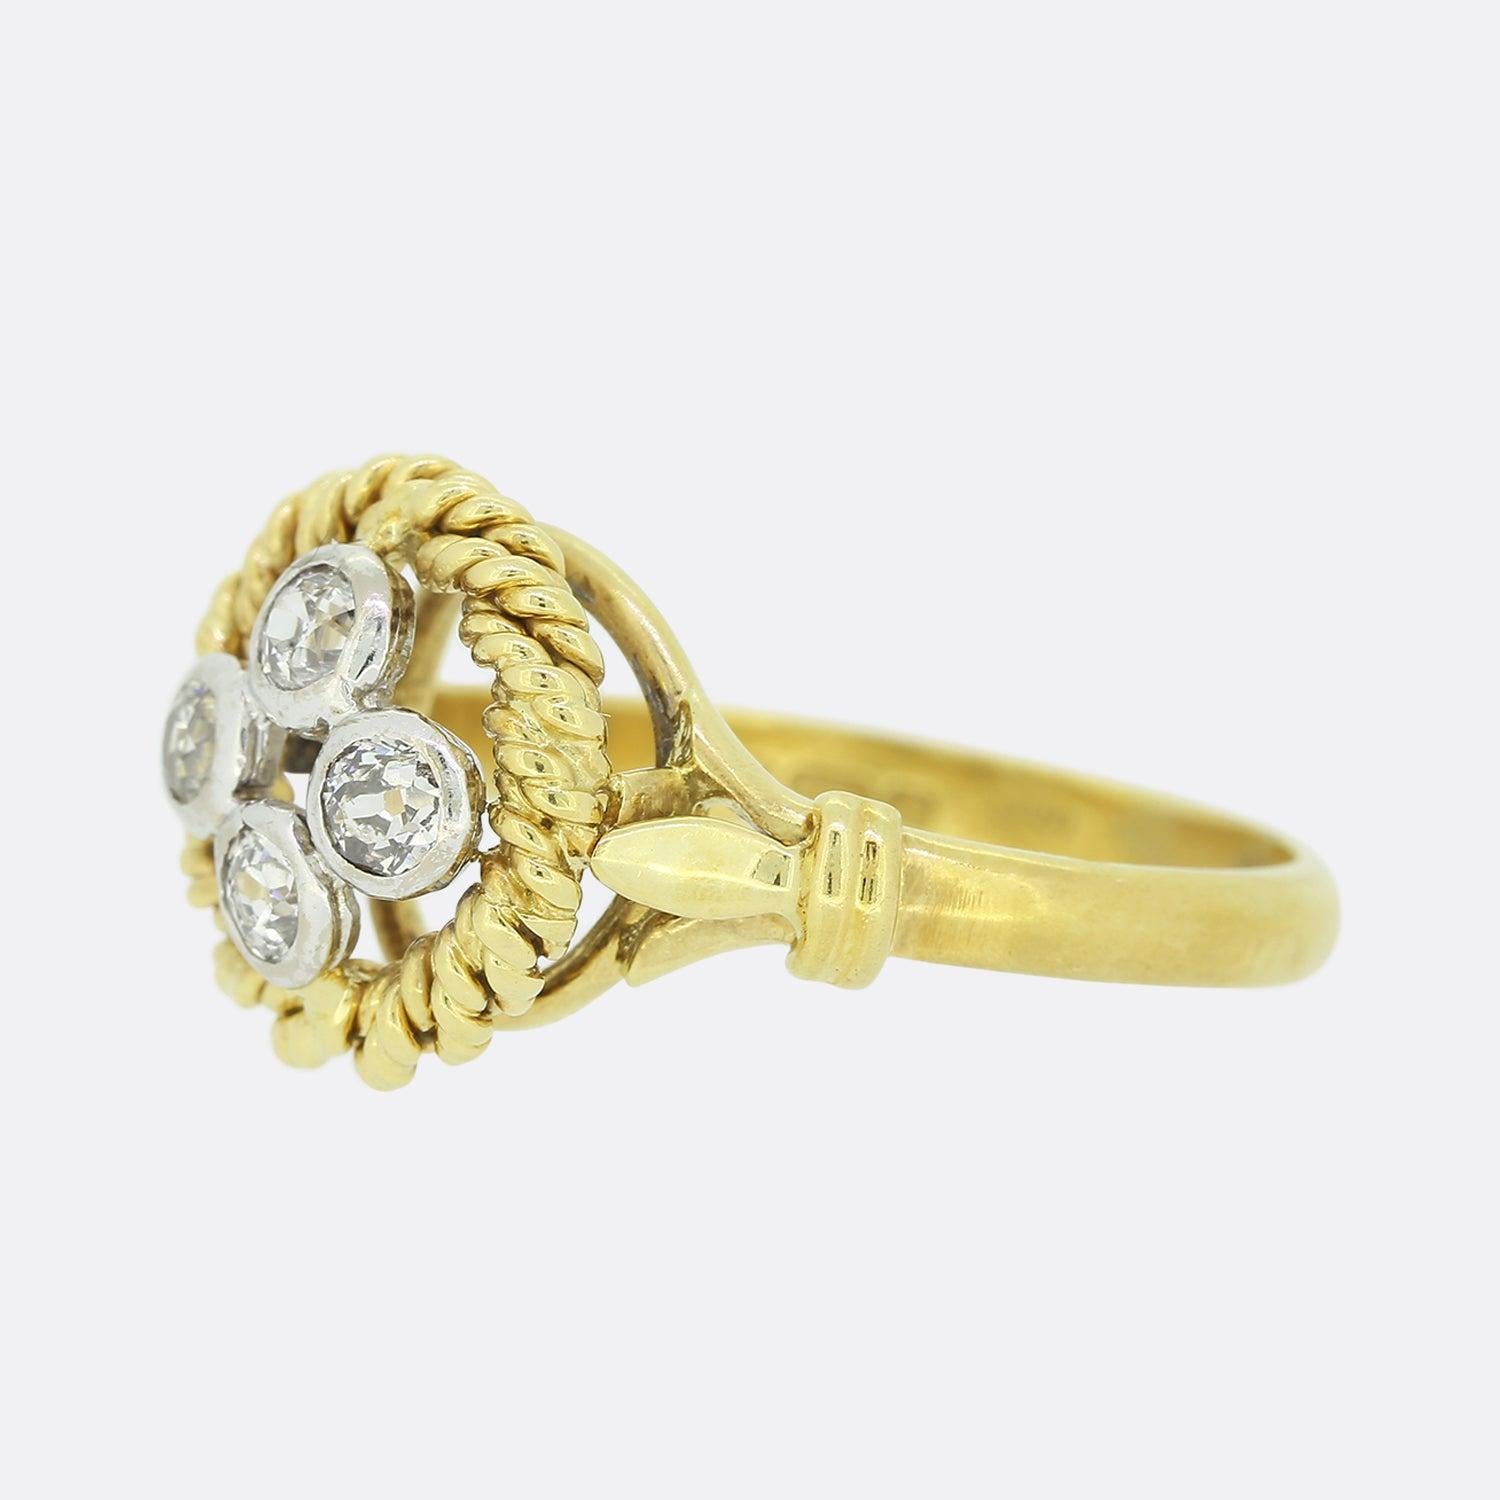 Dies ist ein Vintage 18ct Gelbgold Diamantring. Das Schmuckstück besteht aus einem Quartett von Diamanten im Altschliff, die einzeln in Weißgold in der Mitte einer offenen Seite gefasst sind. Diese Fokussteine sind von einer Seilumrandung umgeben,